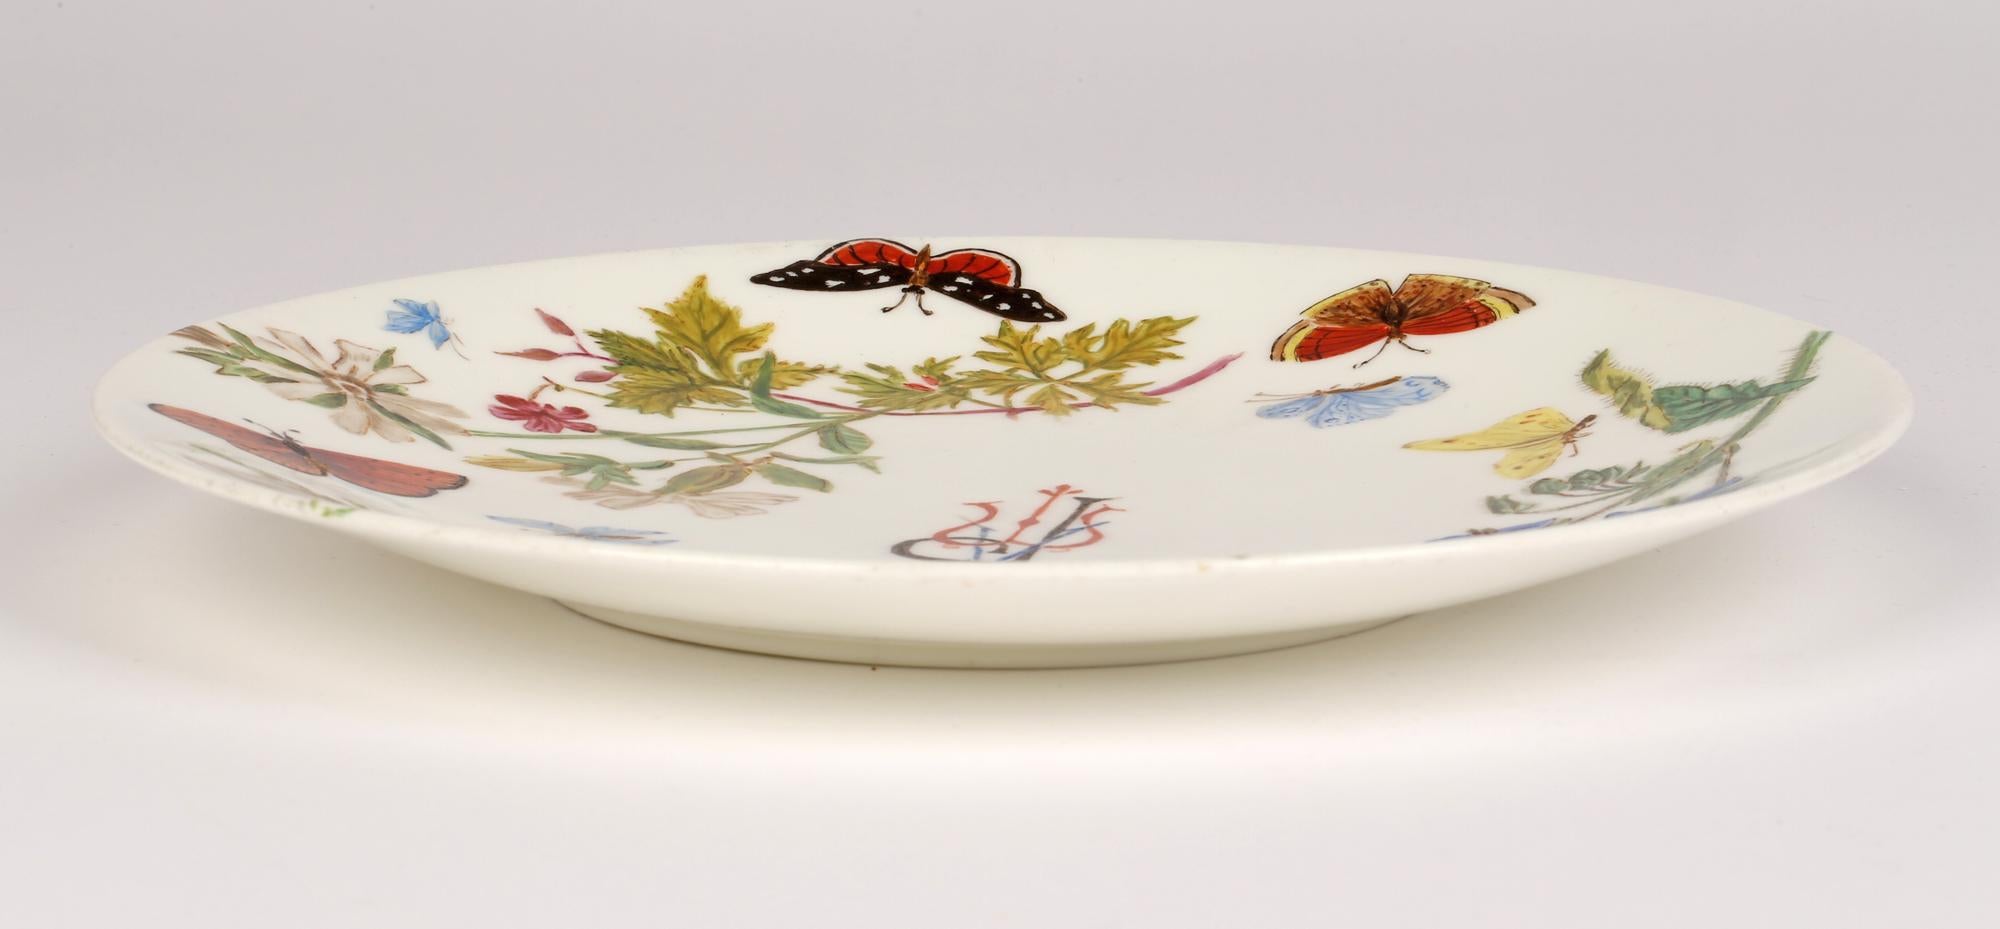 Une assiette de cabinet en porcelaine de Minton, inhabituelle et élégante, peinte à la main avec des fleurs et des papillons, avec les initiales APM et datant de 1890. Cette assiette finement réalisée est de forme ronde simple avec un bord